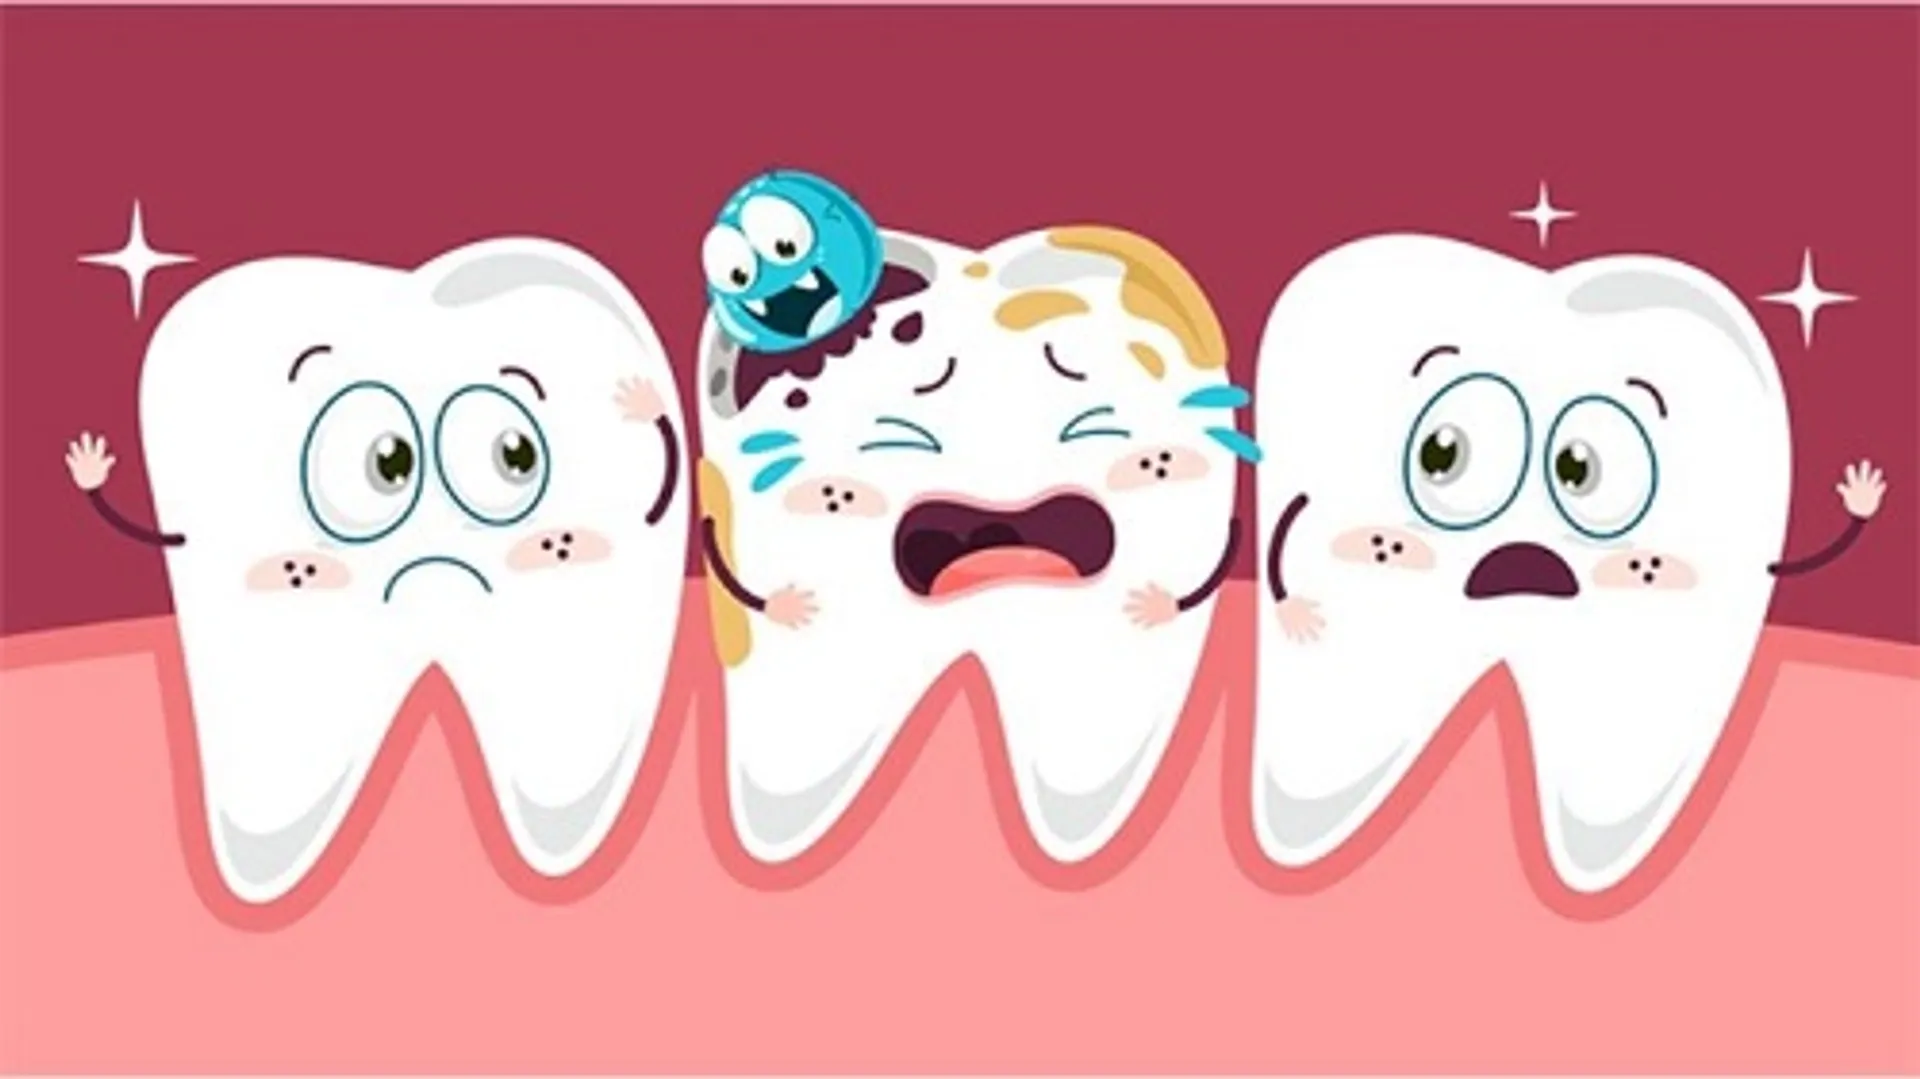 Bọc răng sứ cho răng cửa bị sâu Nên hay không nên
http://phuongtanthanh.gov.vn/page/Boc-rang-su-cho-rang-cua-bi-sau-Nen-hay-khong-nen.html
Răng sâu có thể bọc sứ, kể cả răng cửa. Nếu được phát hiện sớm và điều trị sớm, sẽ không gây ảnh hưởng đến sức khỏe và tính thẩm mỹ của răng.